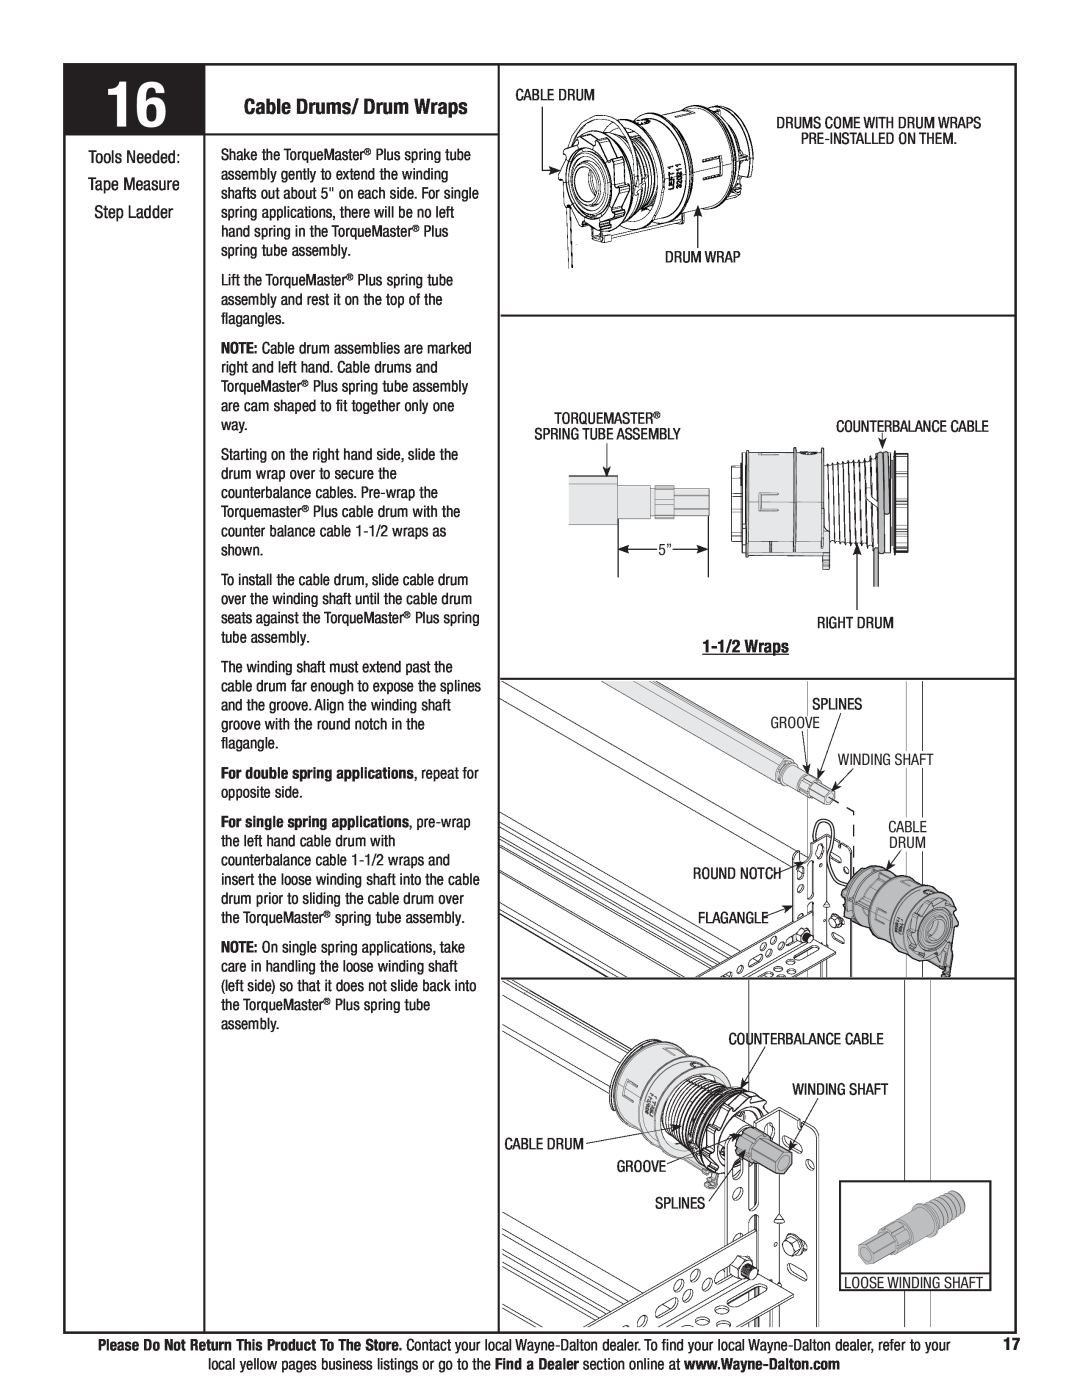 Wayne-Dalton 9700 installation instructions Cable Drums/ Drum Wraps, 1-1/2Wraps 